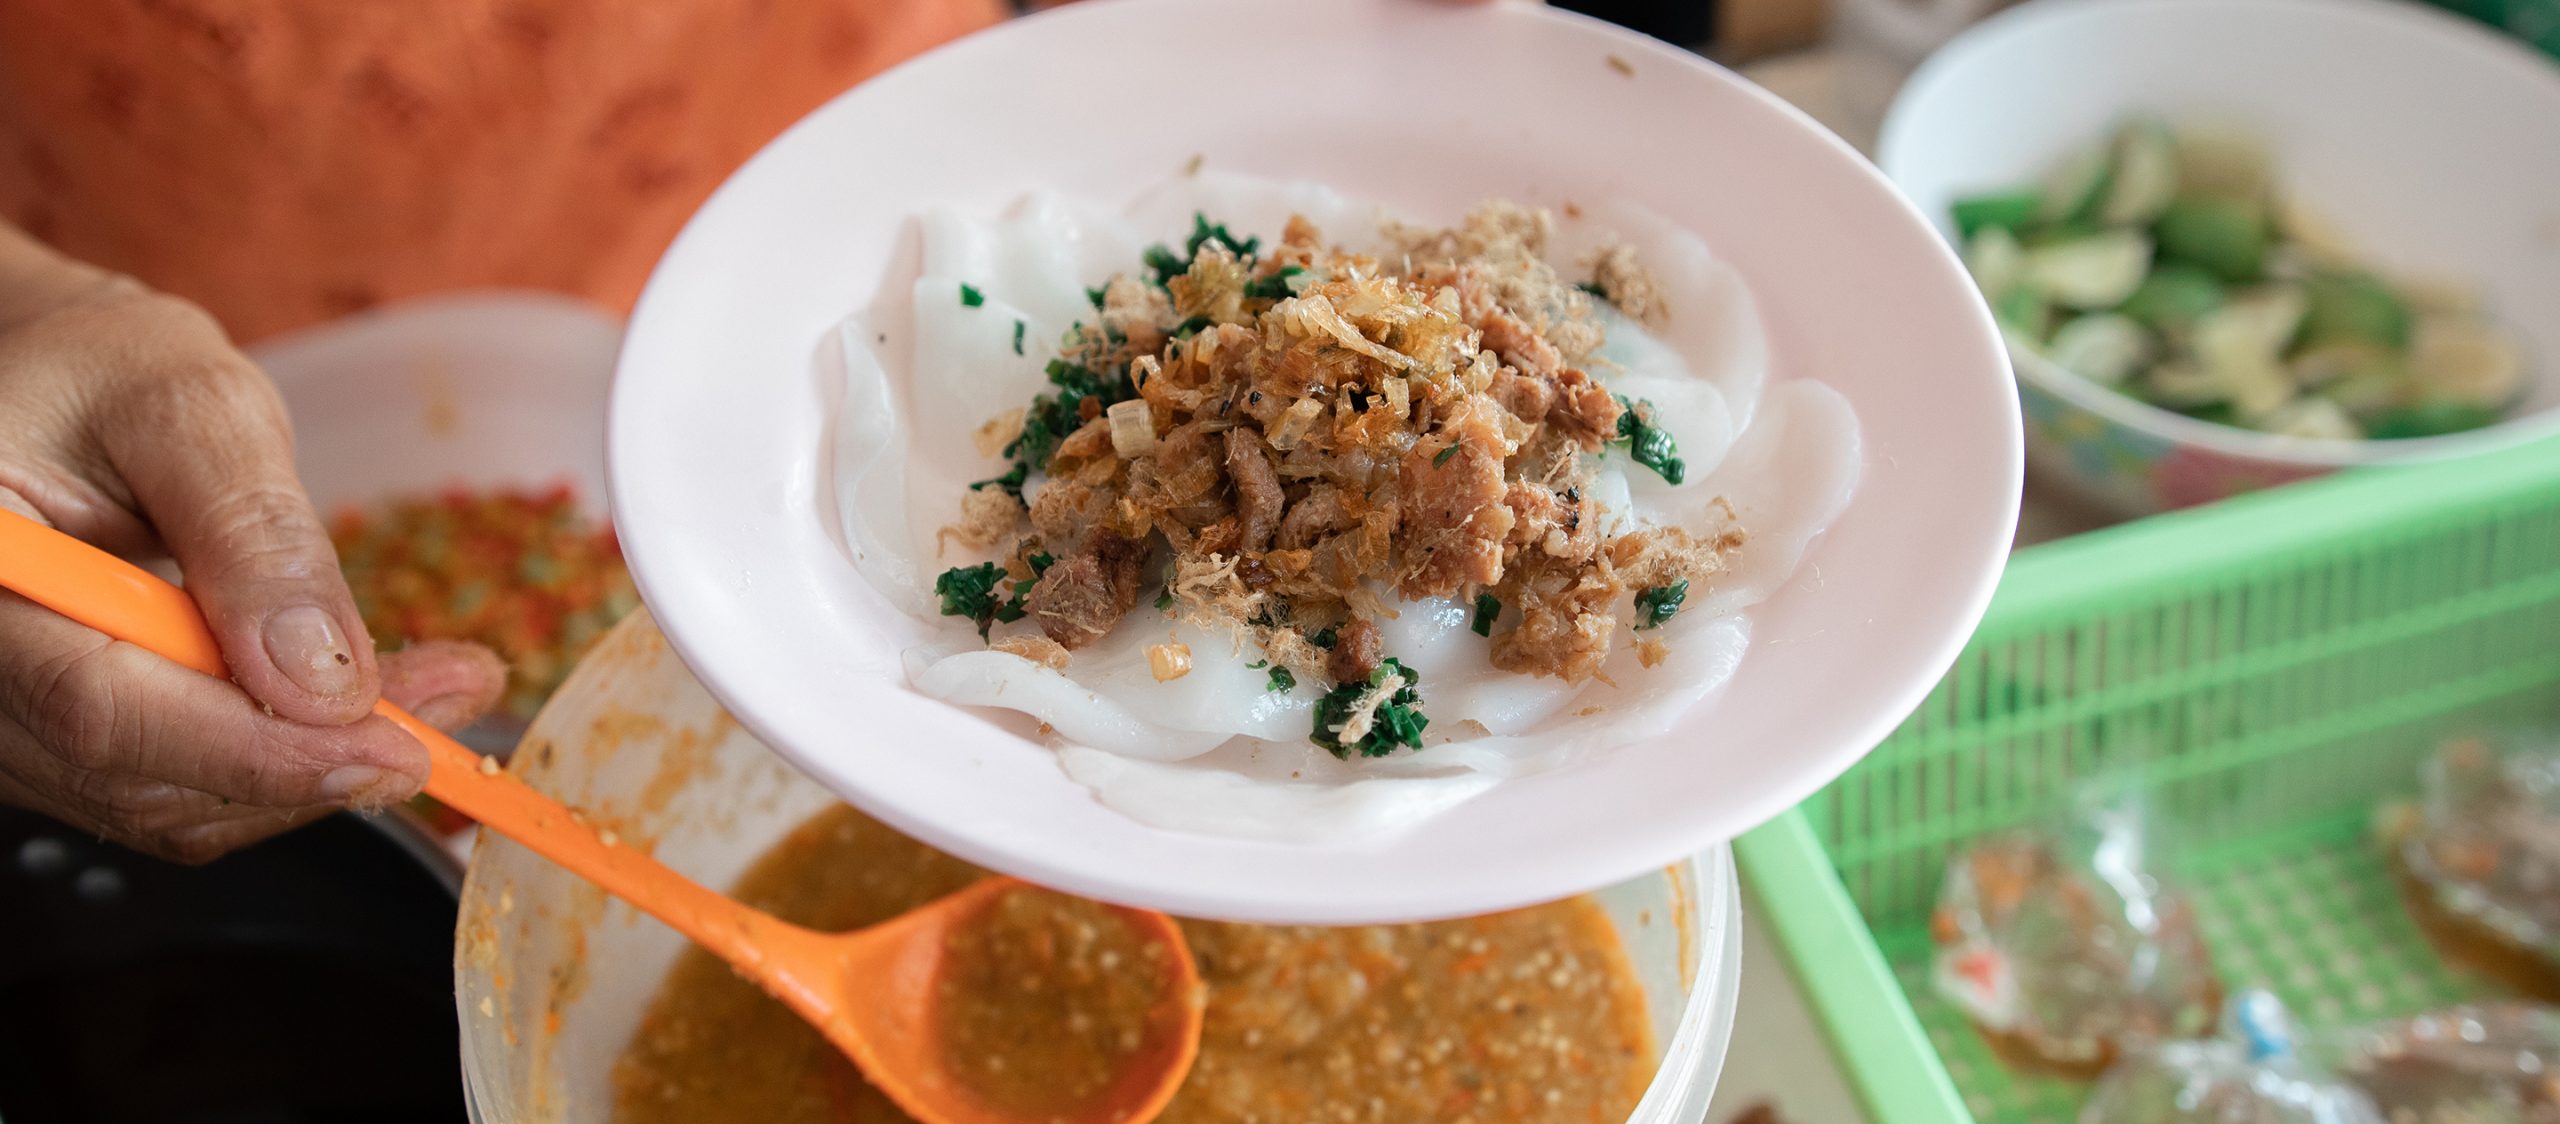 ลิ้มรสอาหารเวียดนามหลากหลายตำรับใน ‘มุกดาหาร’ เมืองเล็กแต่ชวนหลงรัก